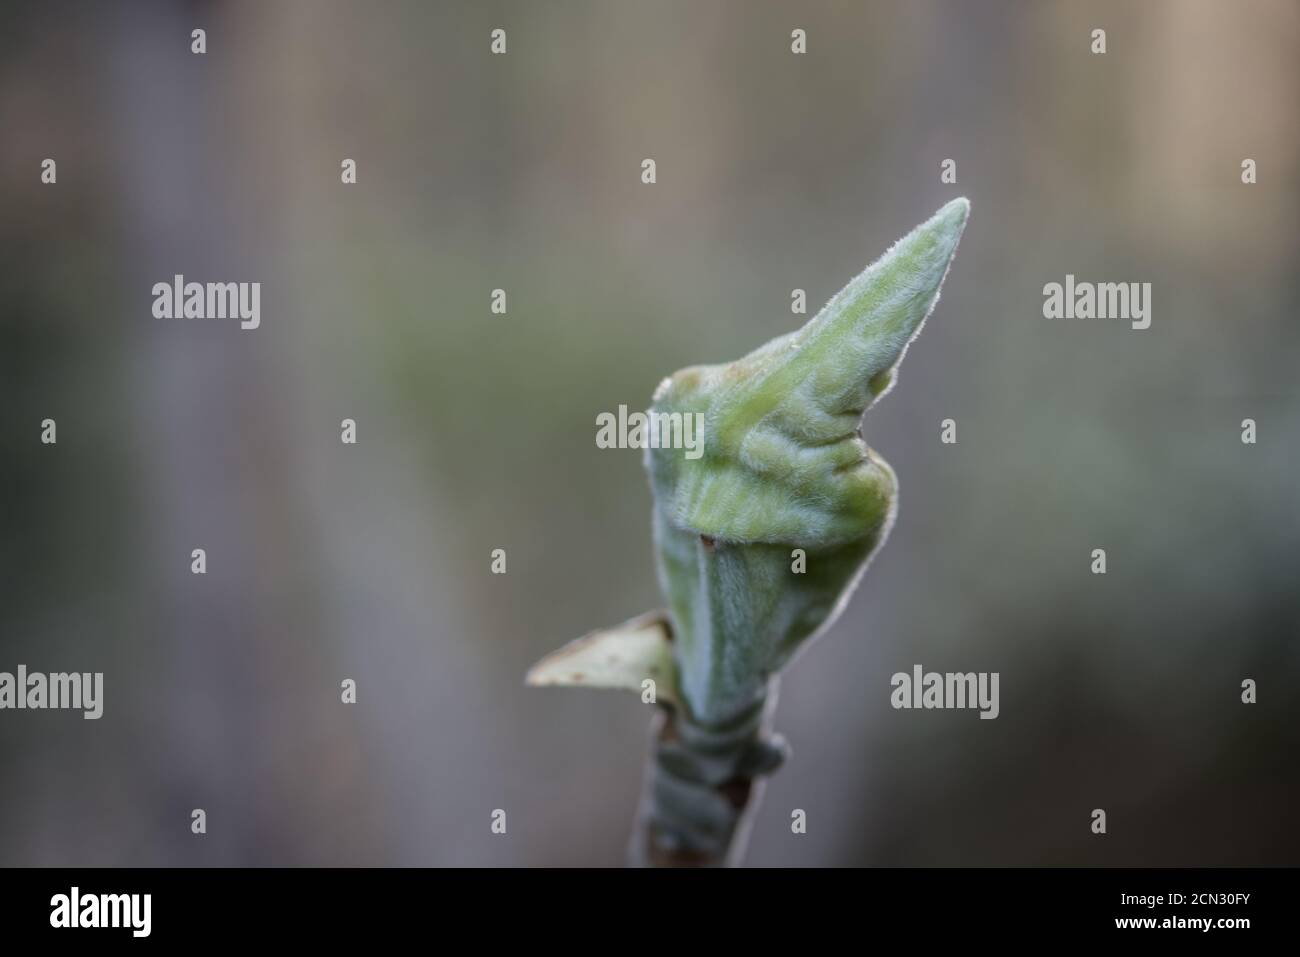 Grüne Pflanze, die aussieht, wie es Mittelfinger gibt Stockfotografie -  Alamy